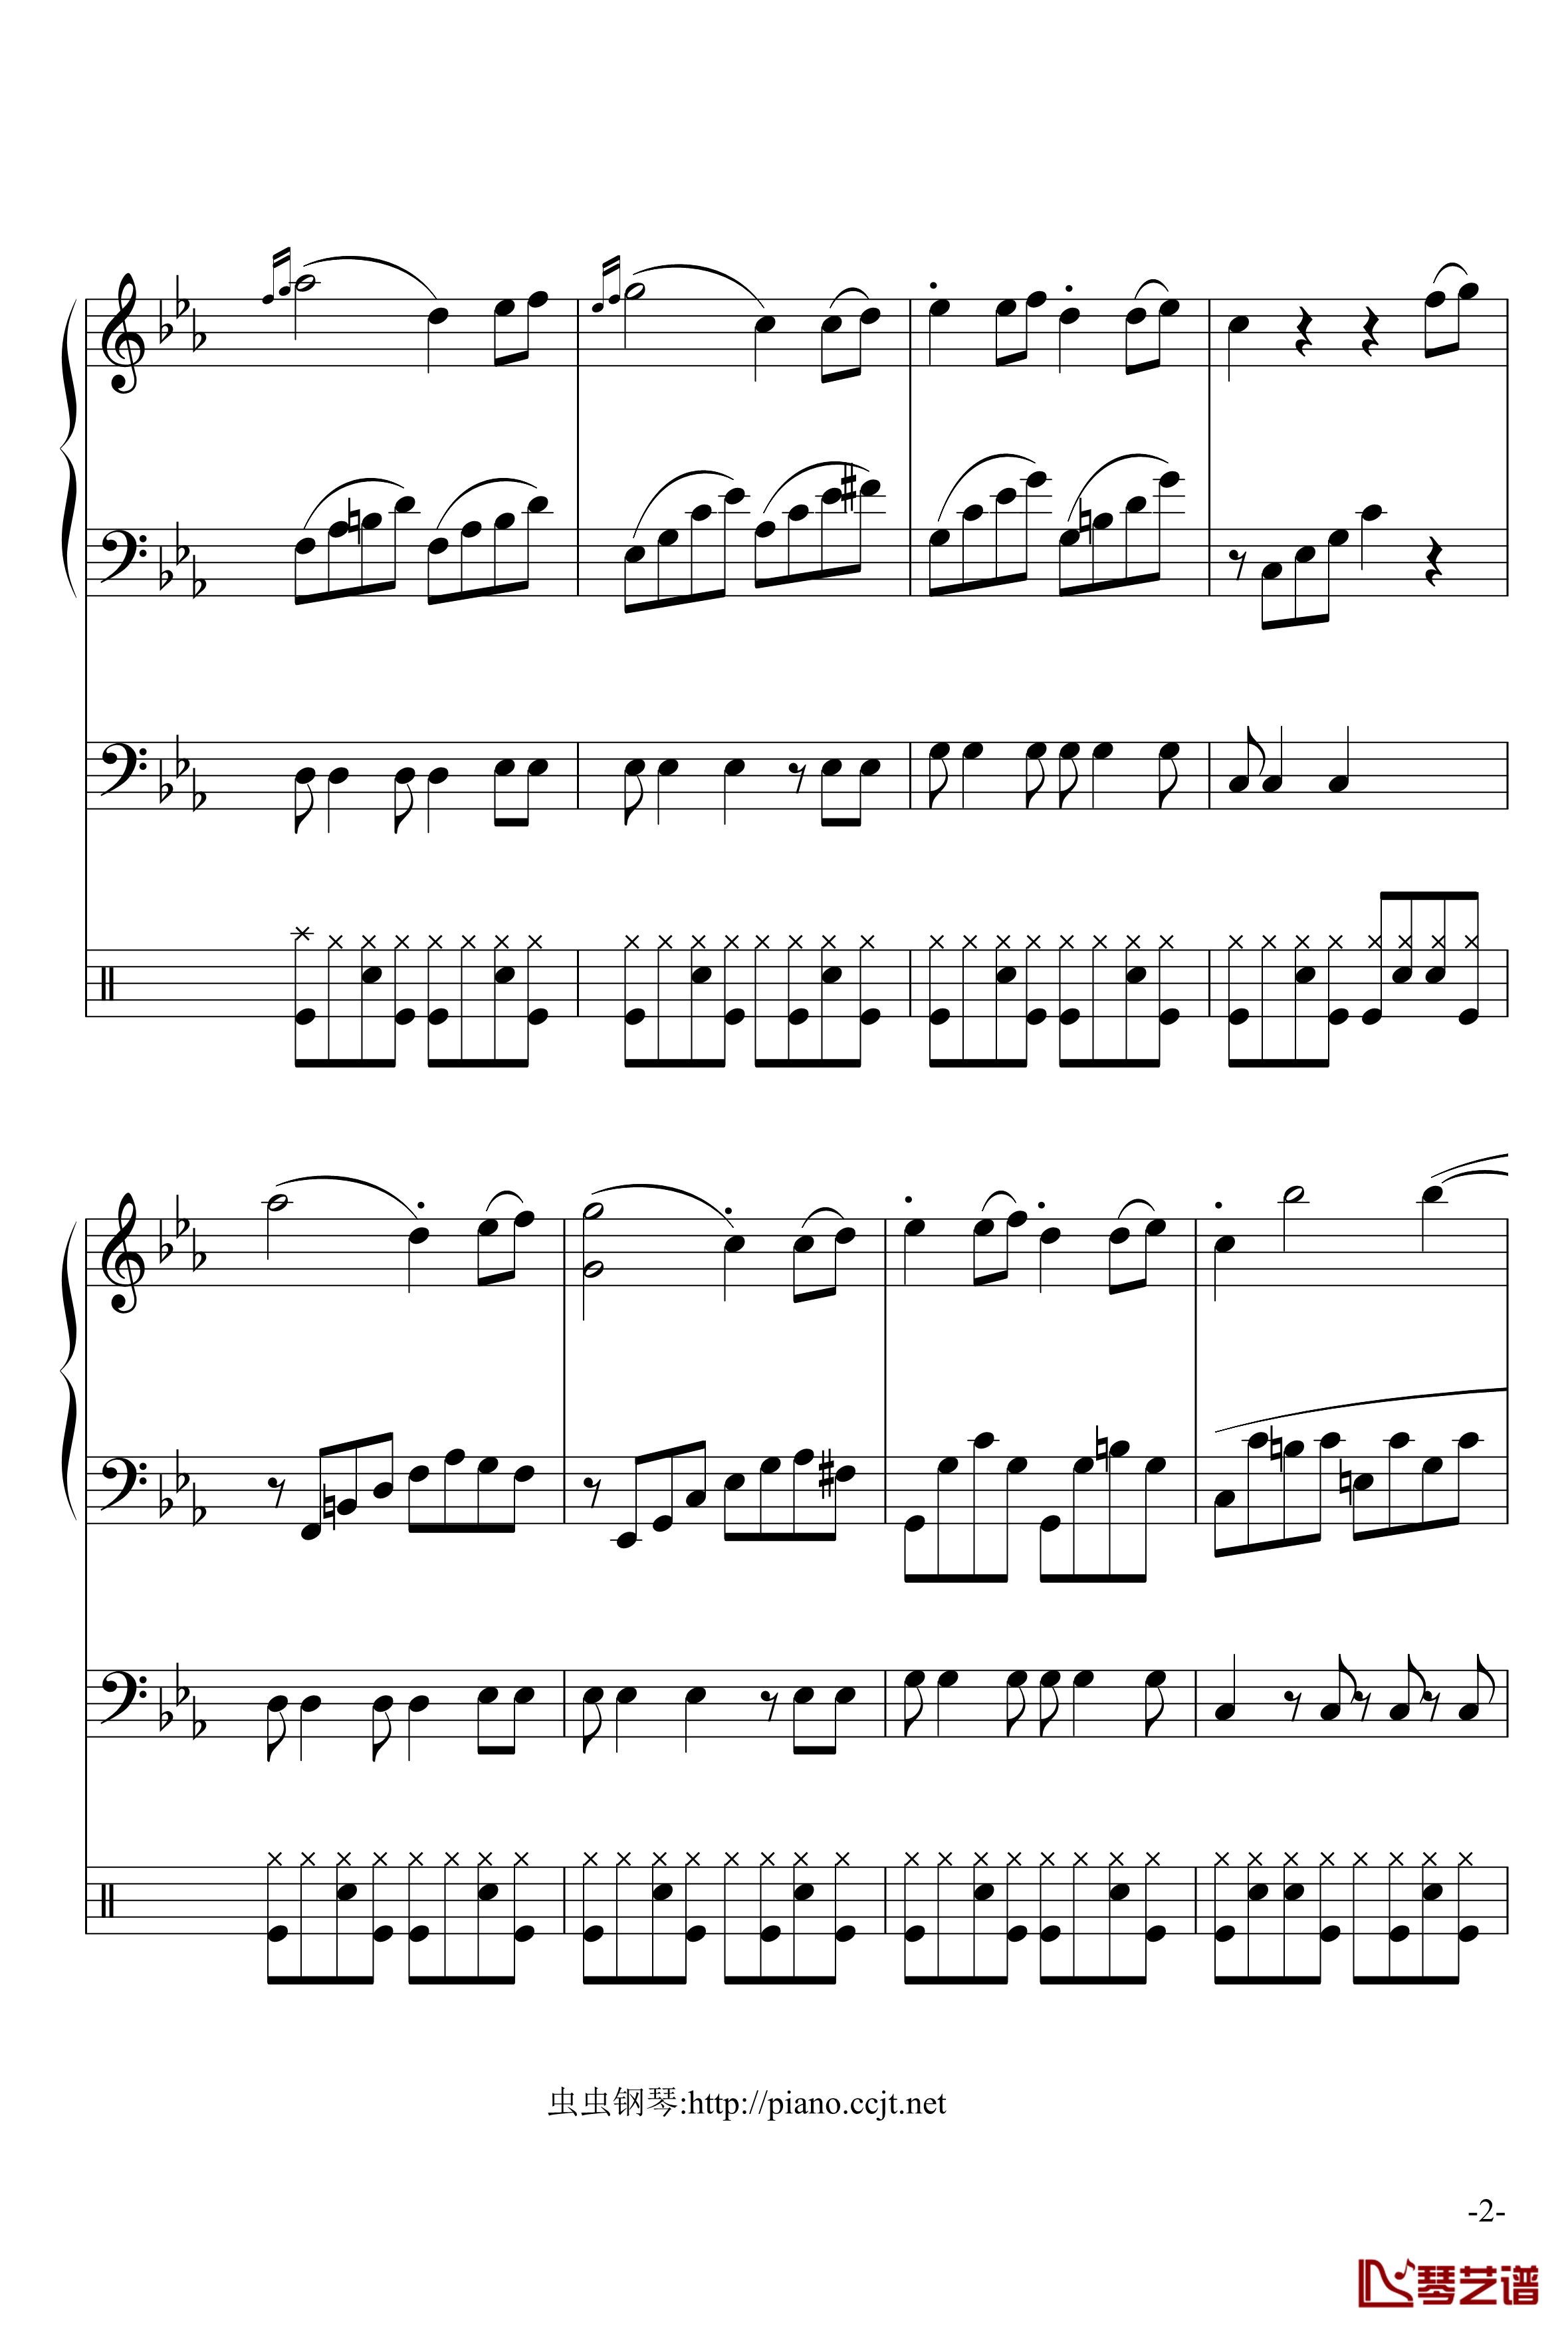 悲怆奏鸣曲钢琴谱-加小乐队-贝多芬-beethoven2